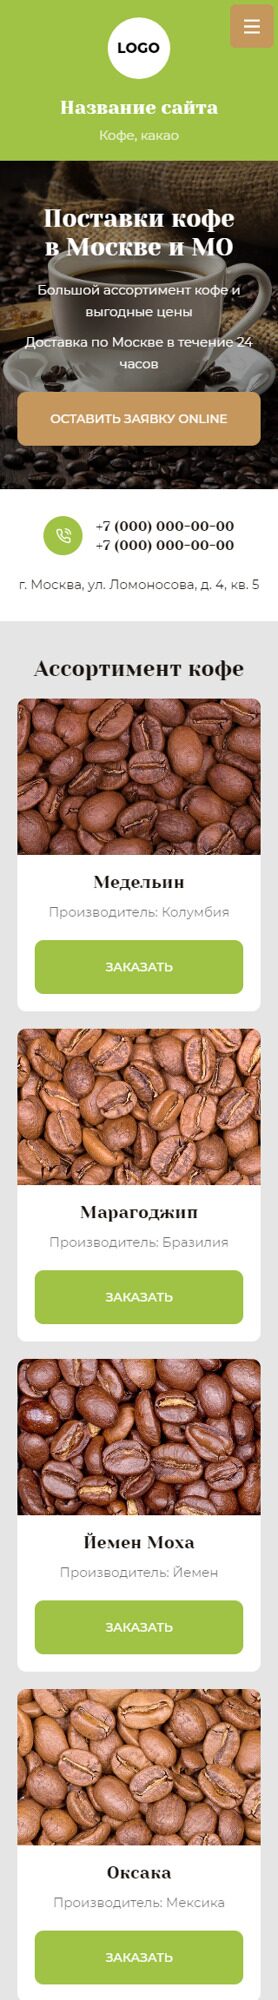 Готовый Сайт-Бизнес № 4433719 - Поставки кофе (Мобильная версия)